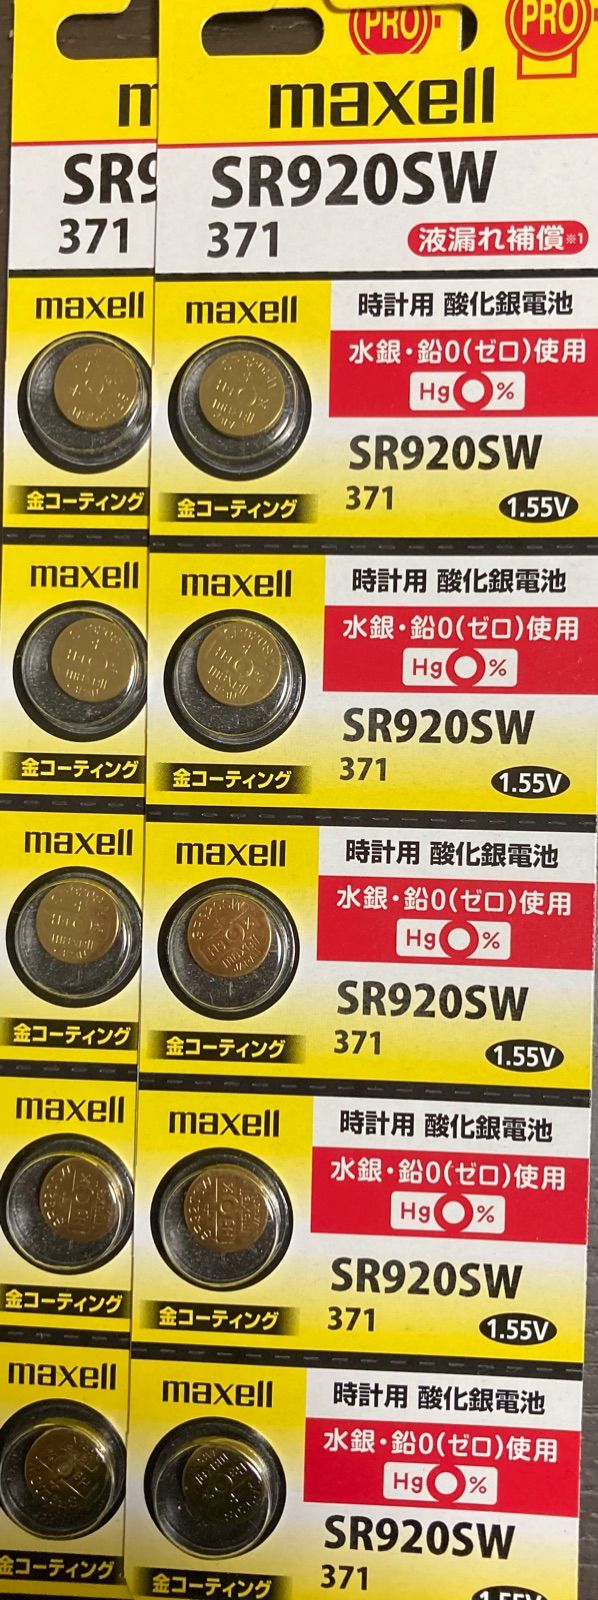 日立 maxell マクセル 酸化銀電池 正規品 水銀・鉛不使用 時計 SR920SW 送料無料 日本製 国産 金コーティング 金電池 高品質 腕時計  ボタン電池 電池 1個